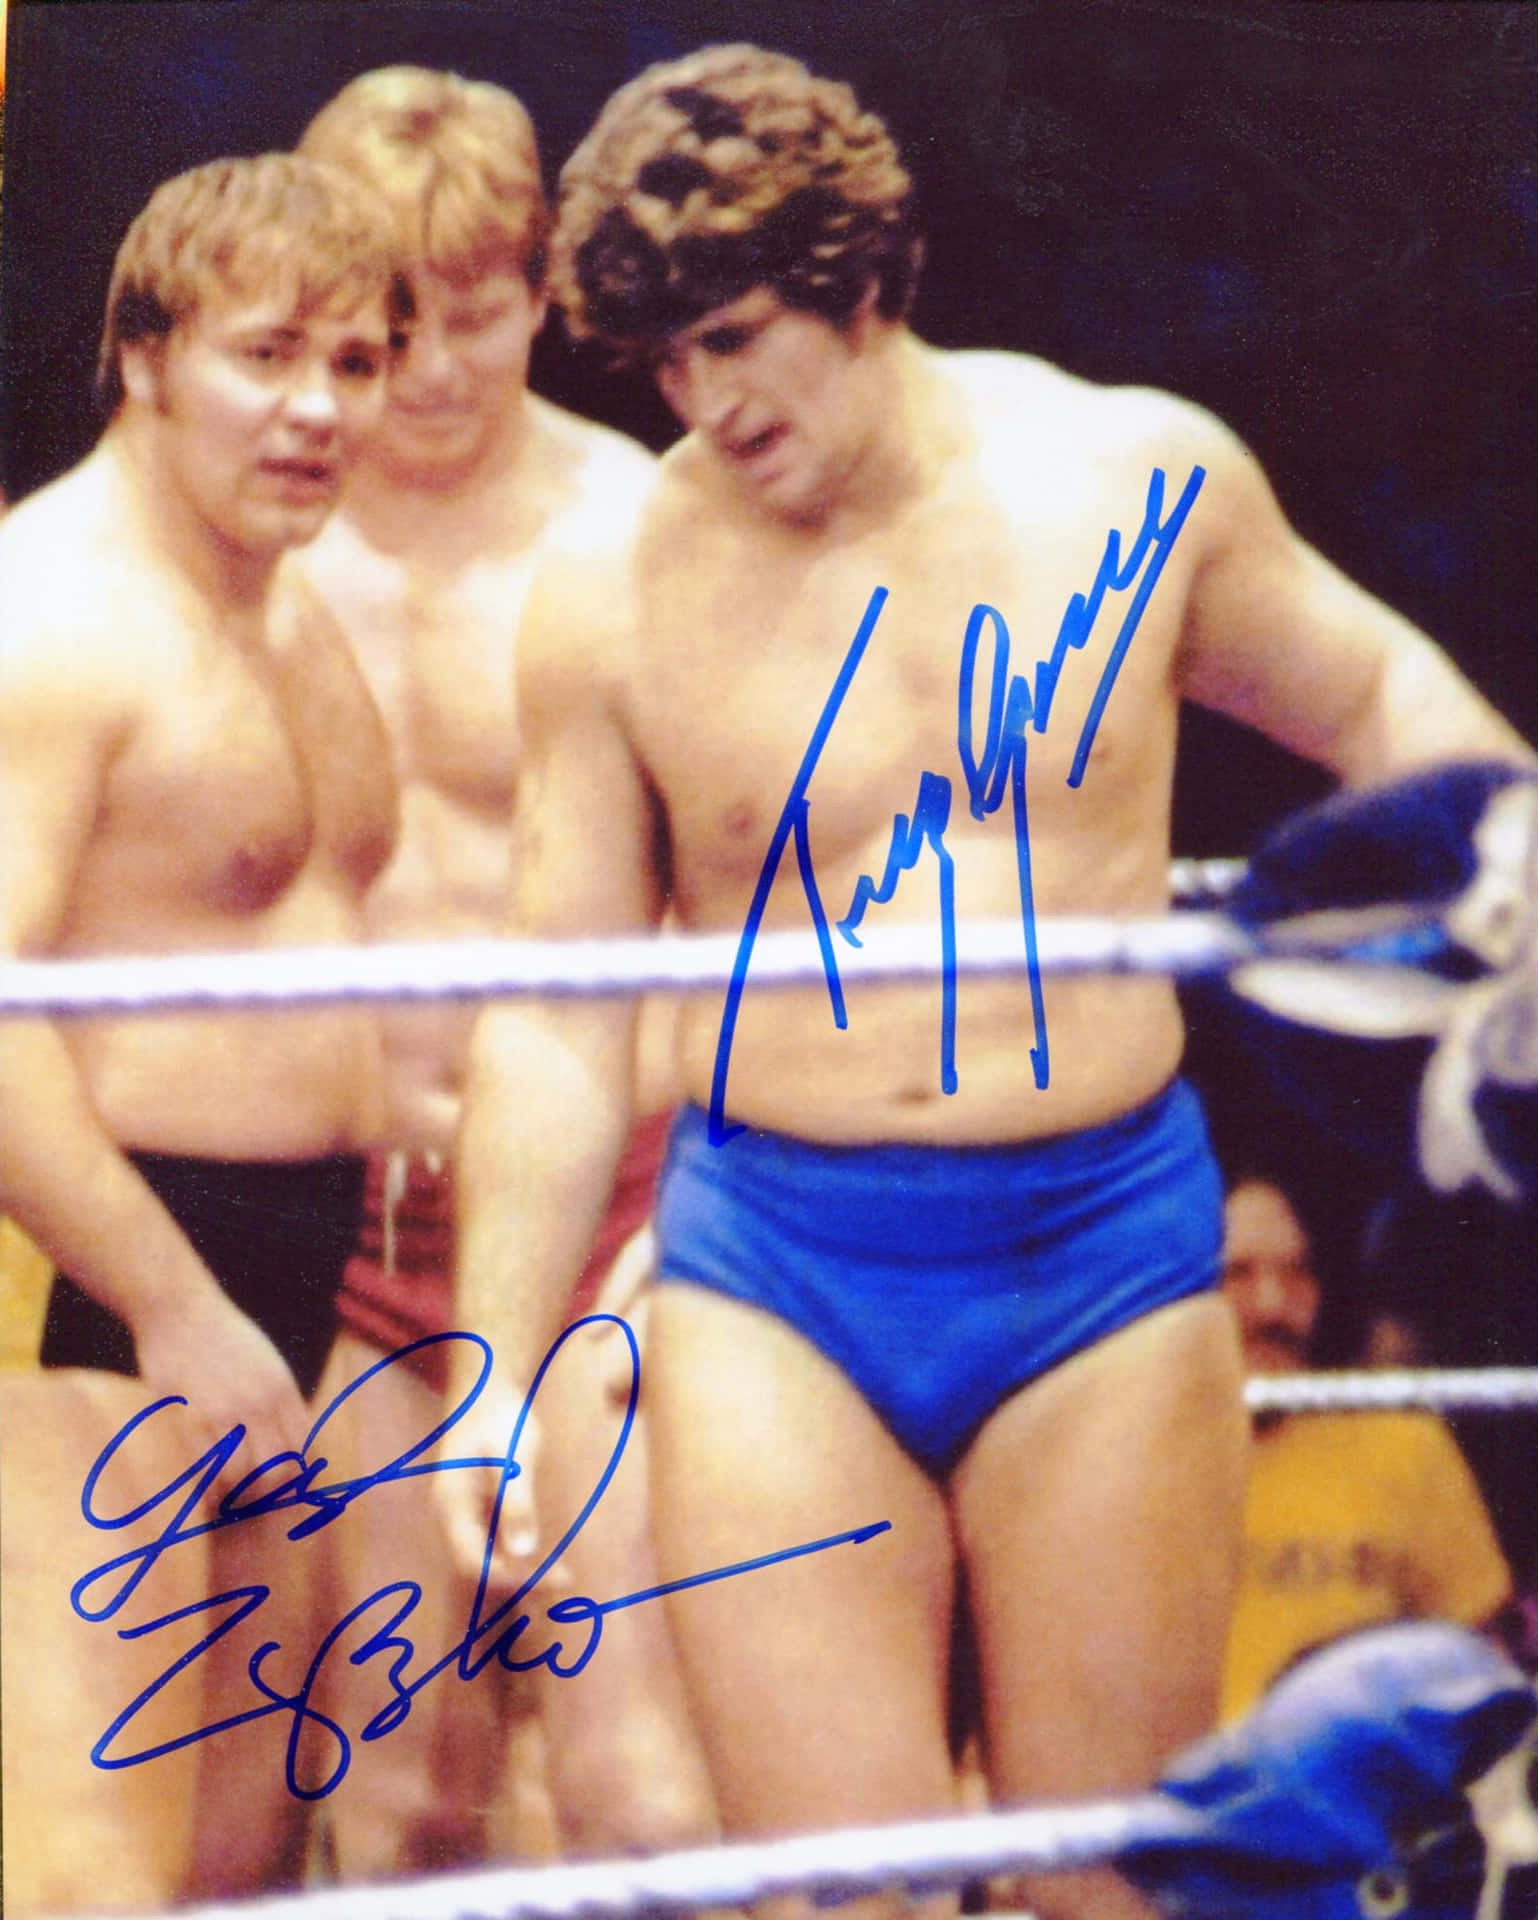 Wrestlere Larry Zbyszko og Tony Garea Autografi Tapet Wallpaper